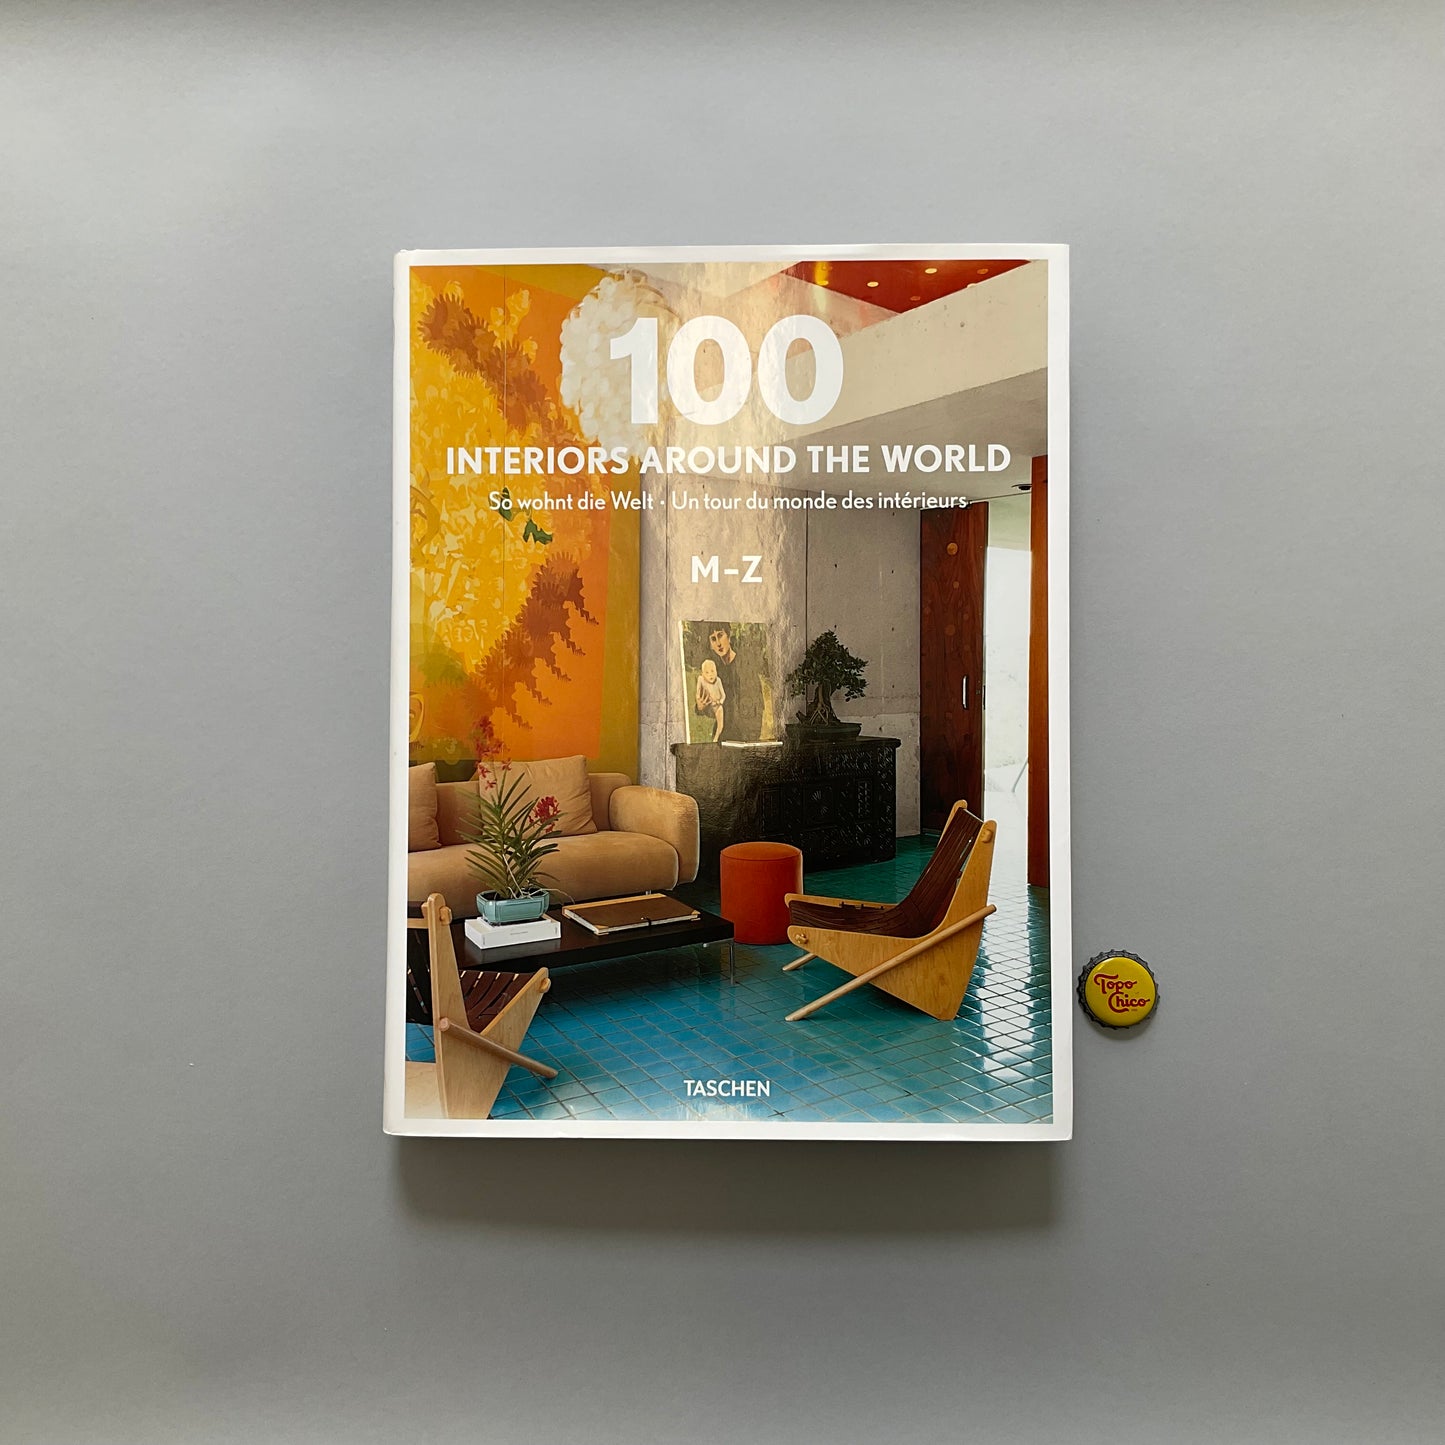 100 Interiors Around the World Books